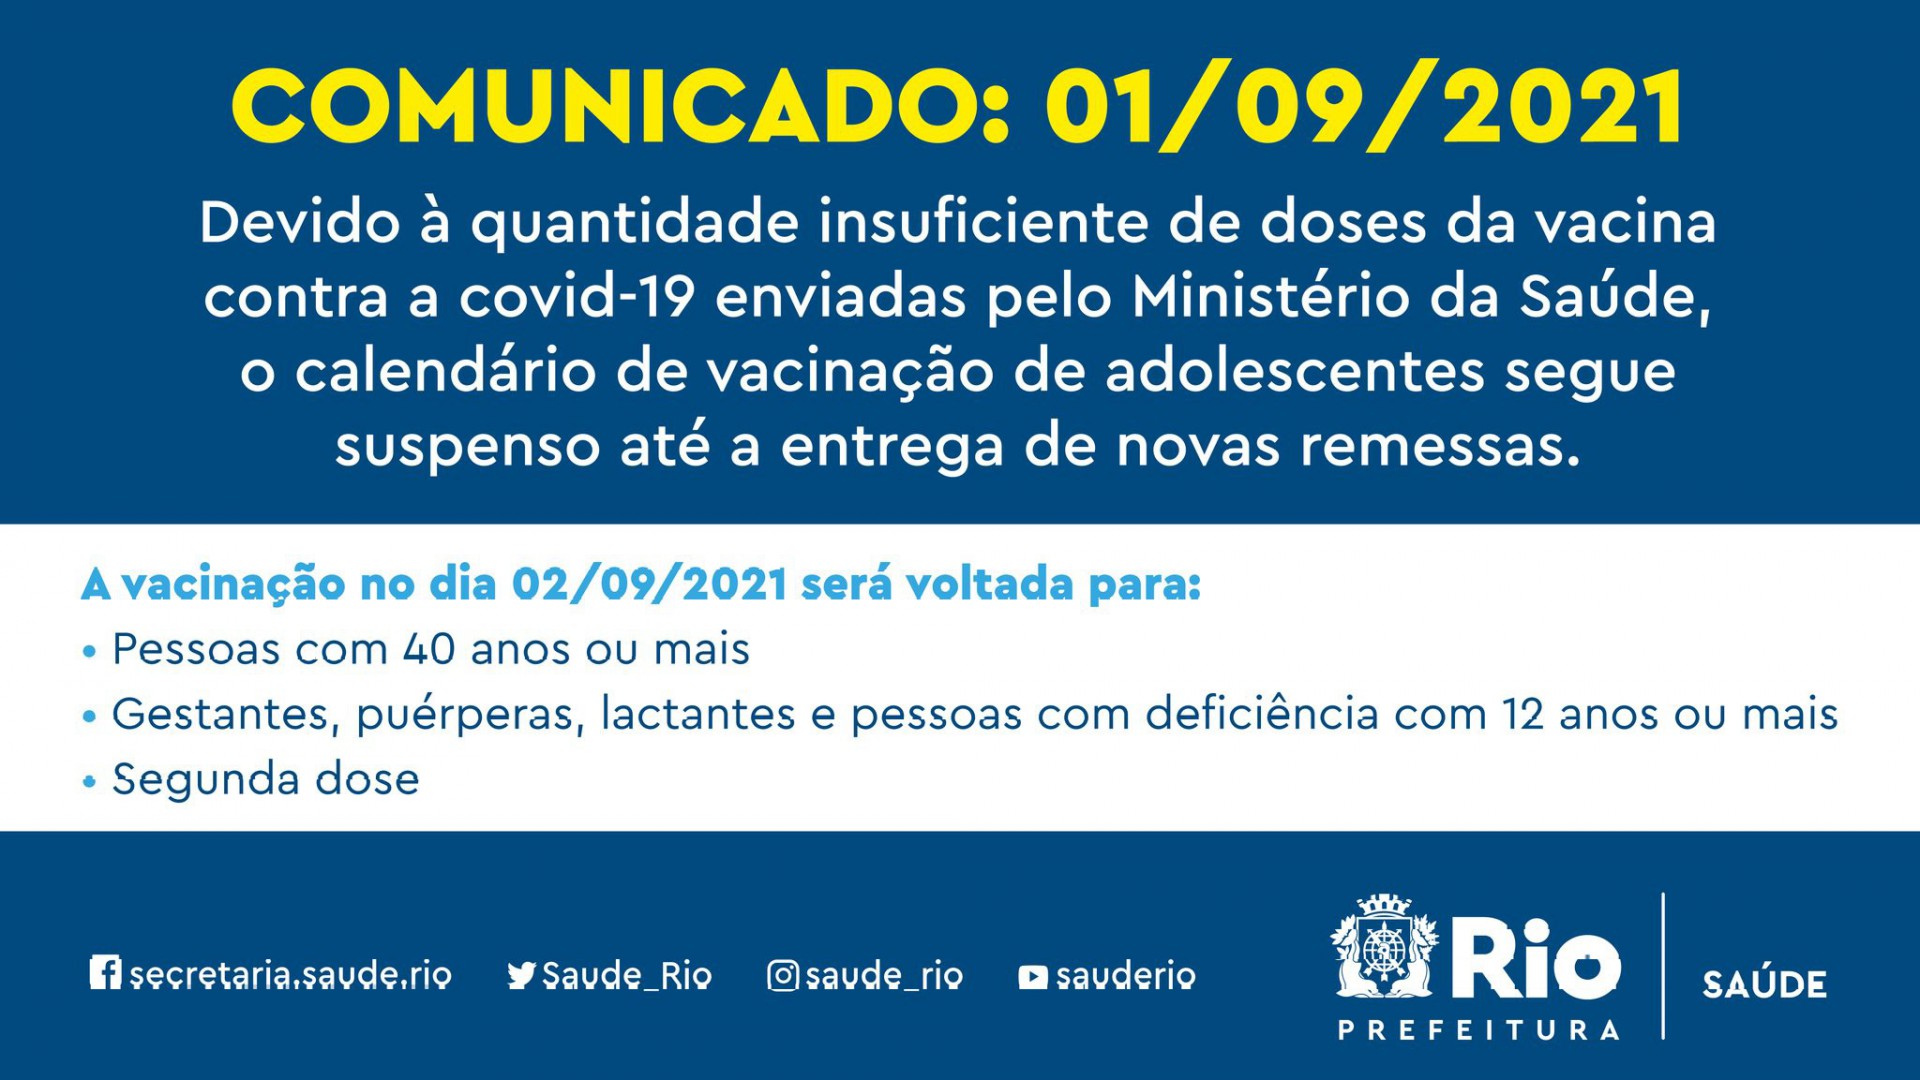 Calendário dos adolescentes permanece suspenso - Divulgação/Prefeitura do Rio